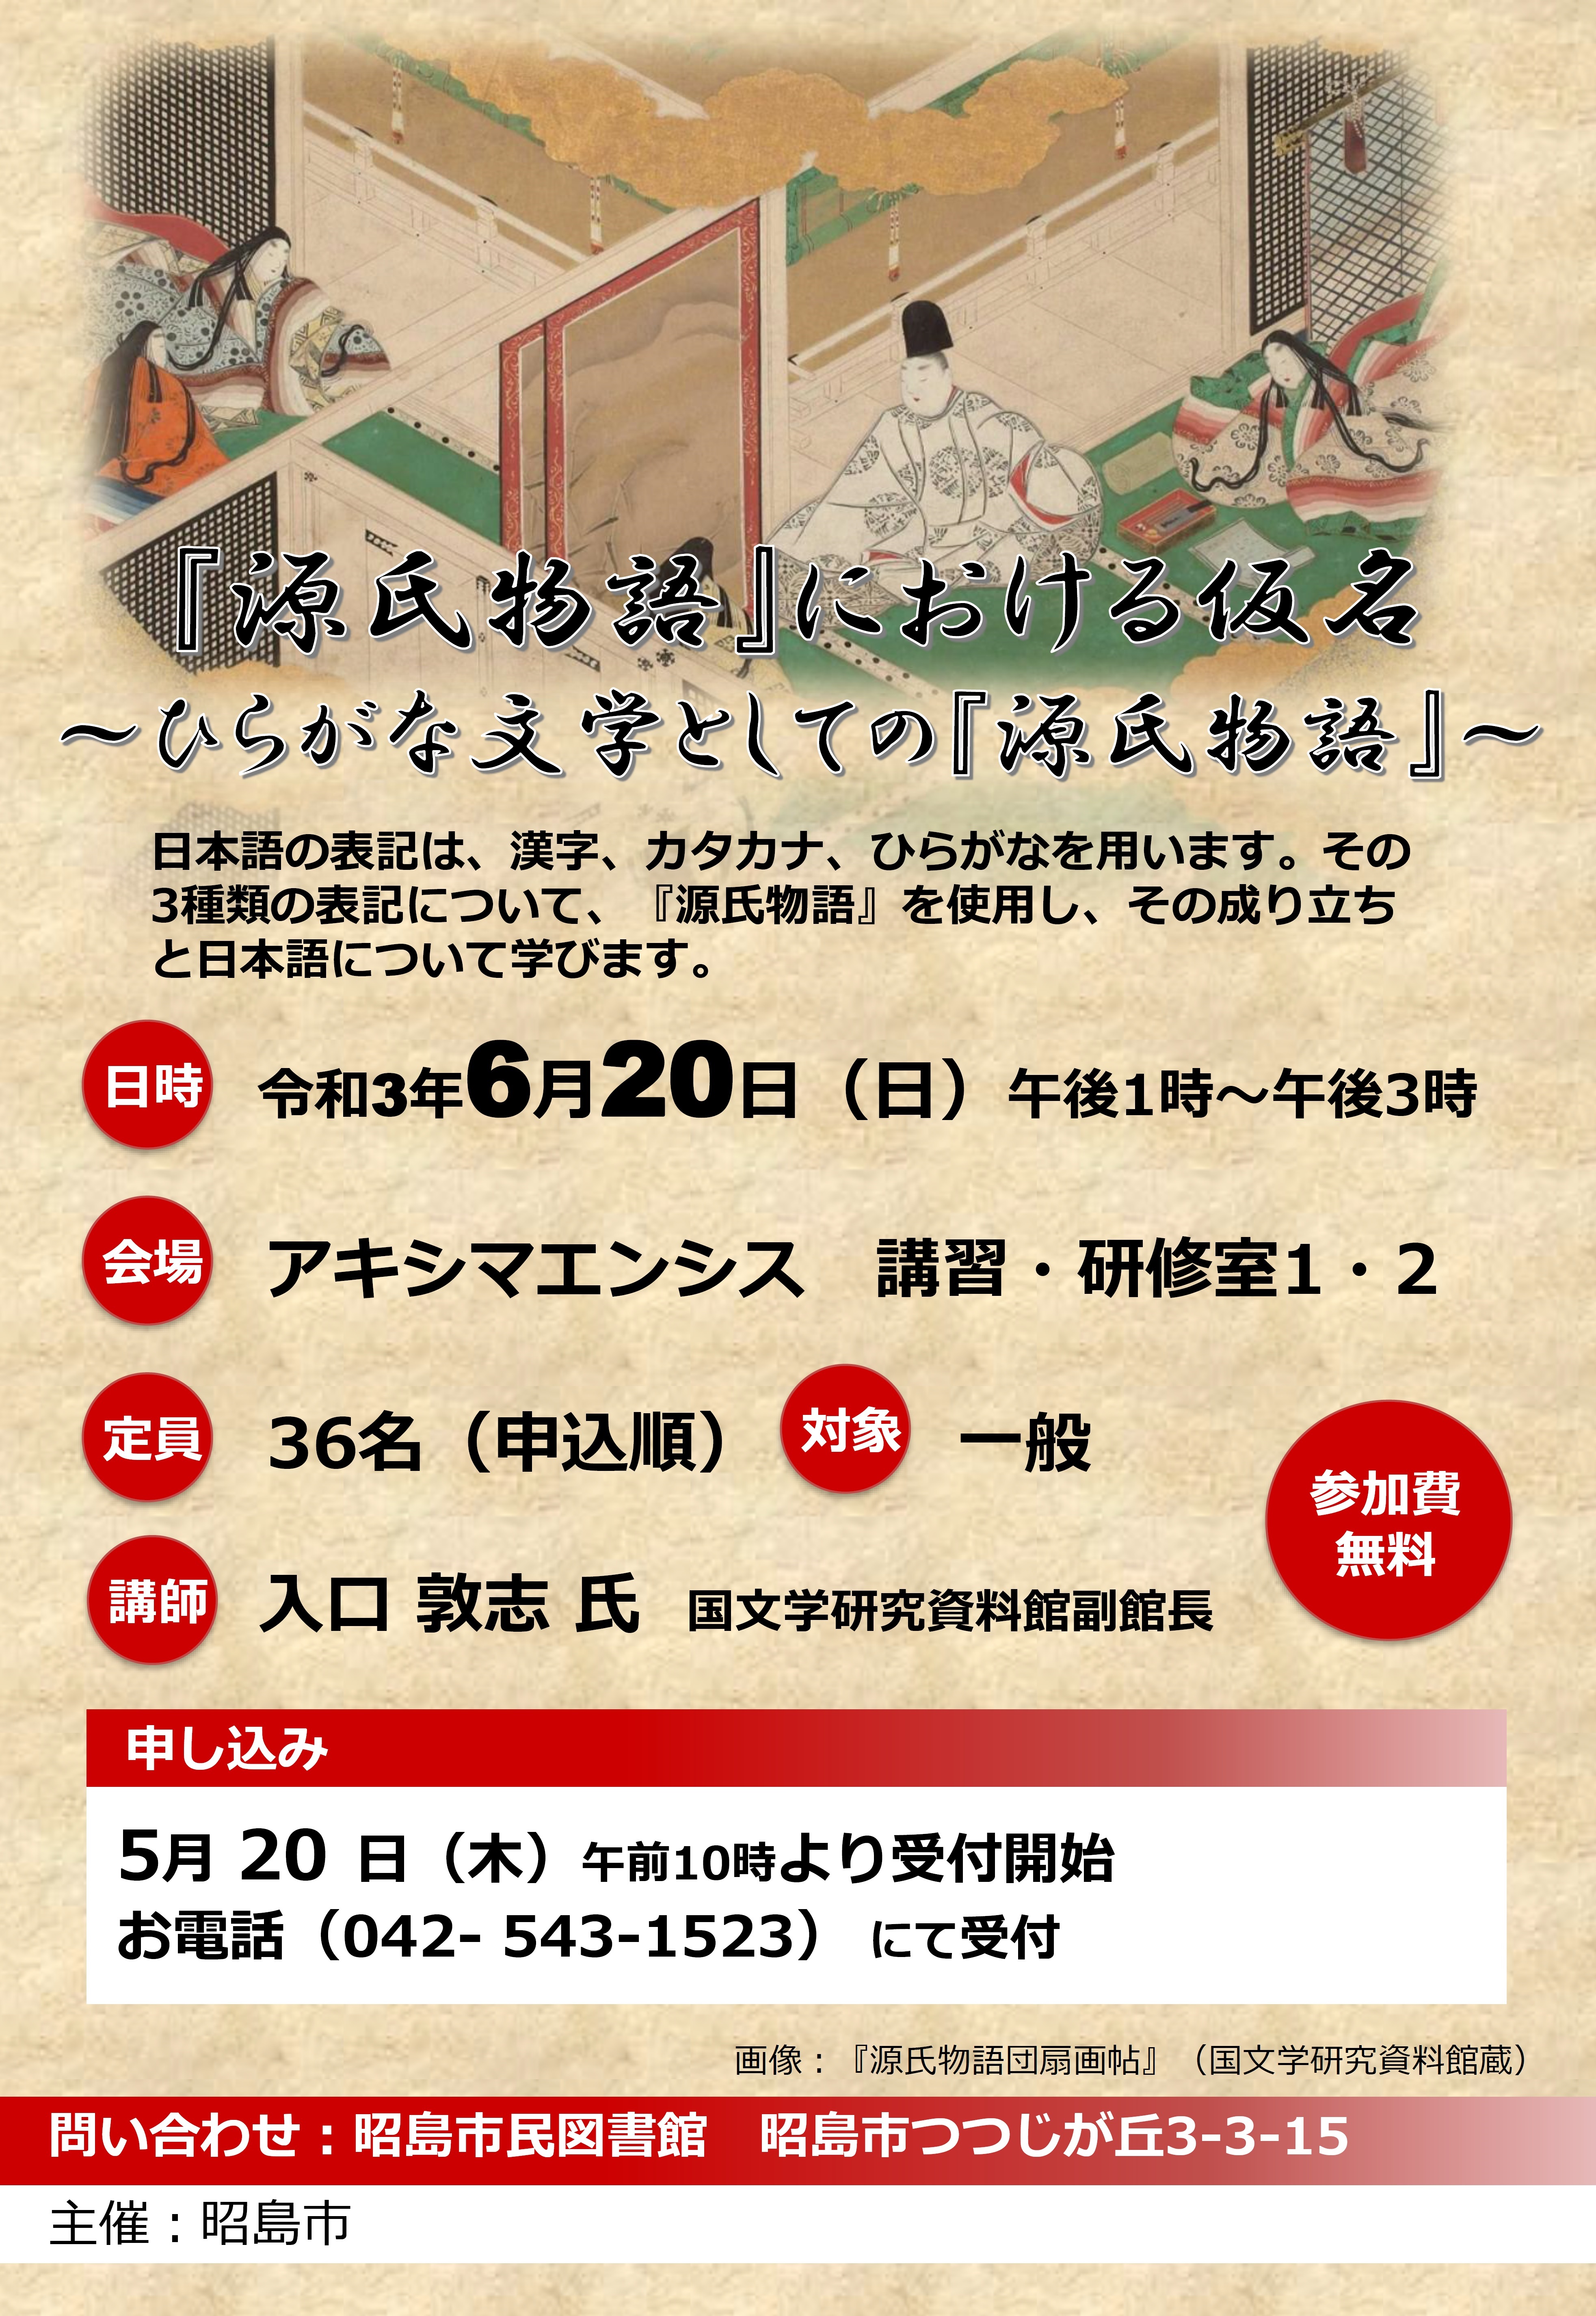 講座「『源氏物語』における仮名」の案内ポスターのサムネイル